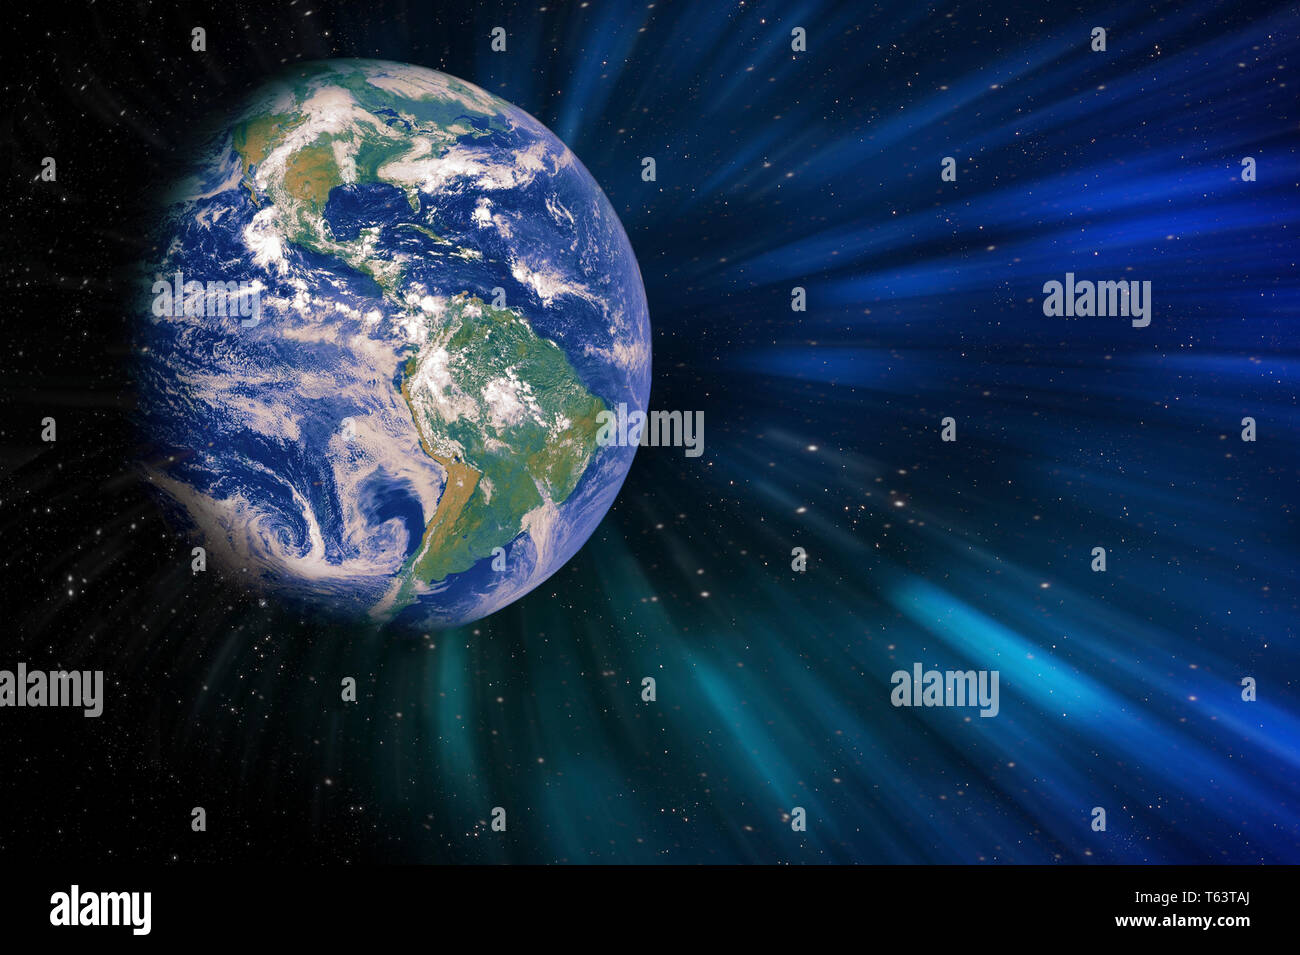 Erde in der Galaxie mit Gasen und bunte Fantasie magische Licht fackeln Elemente dieses Bild von der NASA eingerichtet Stockfoto